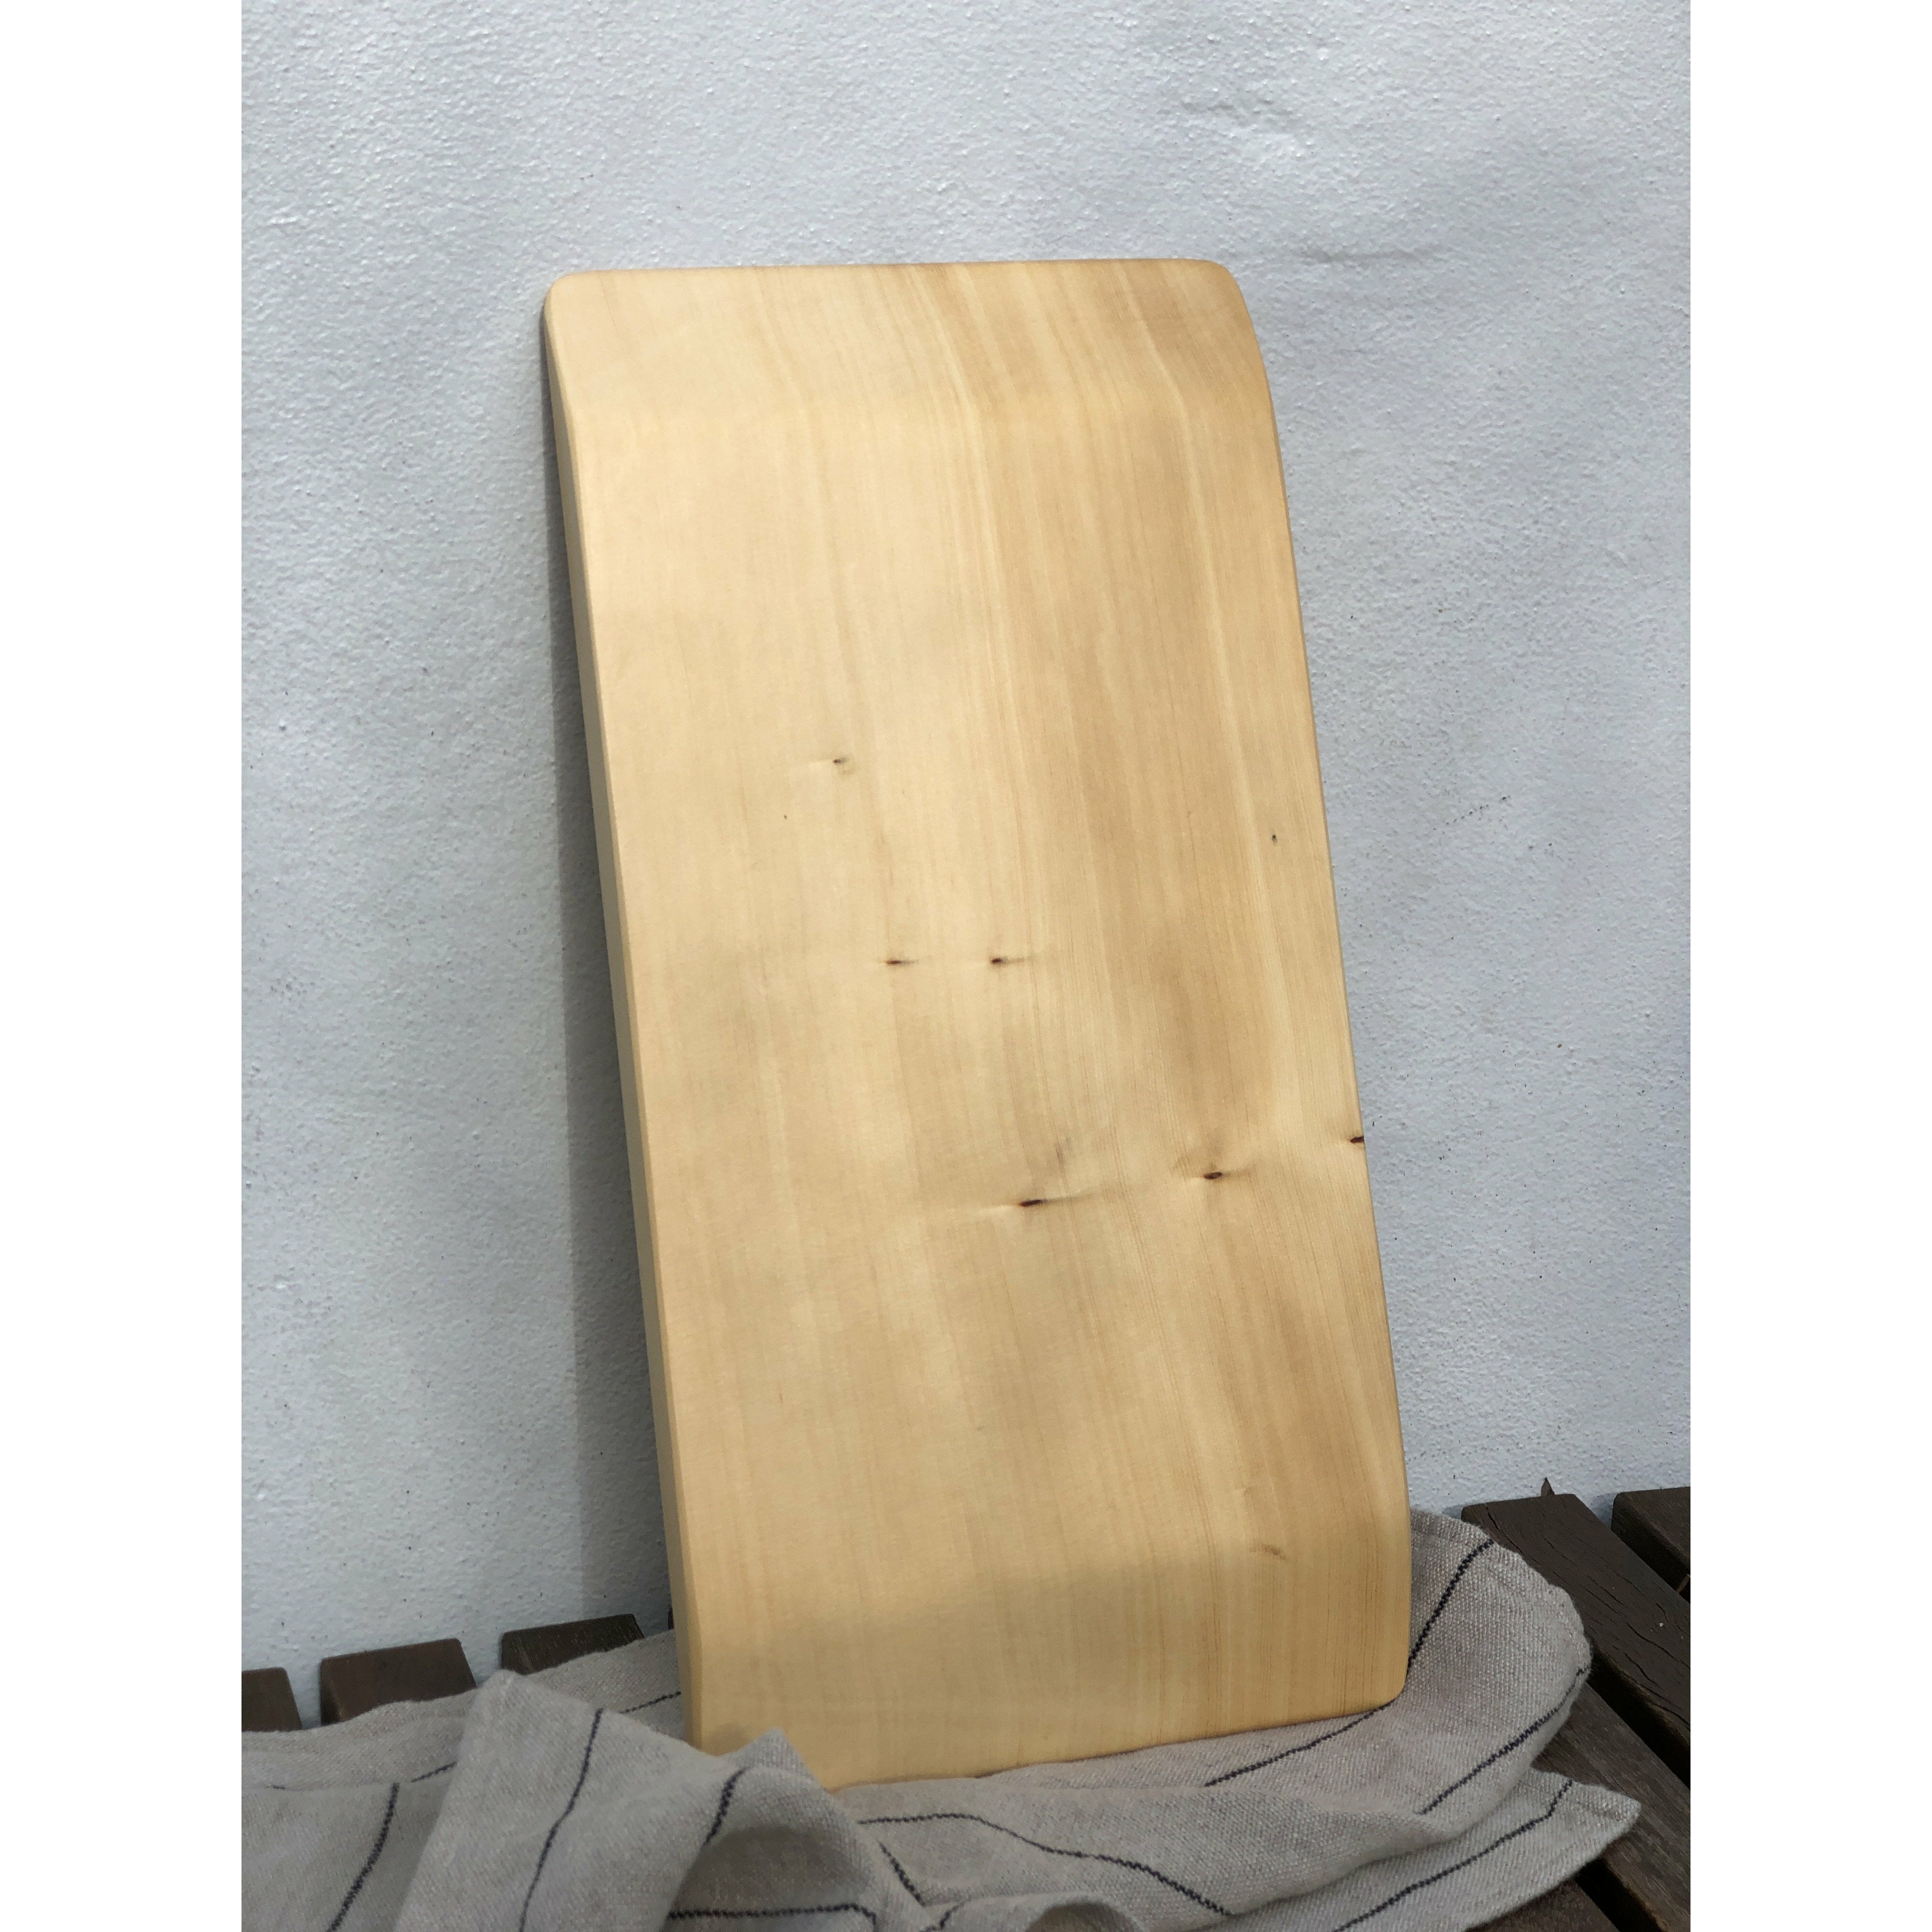 Hasa Board - Huon Pine